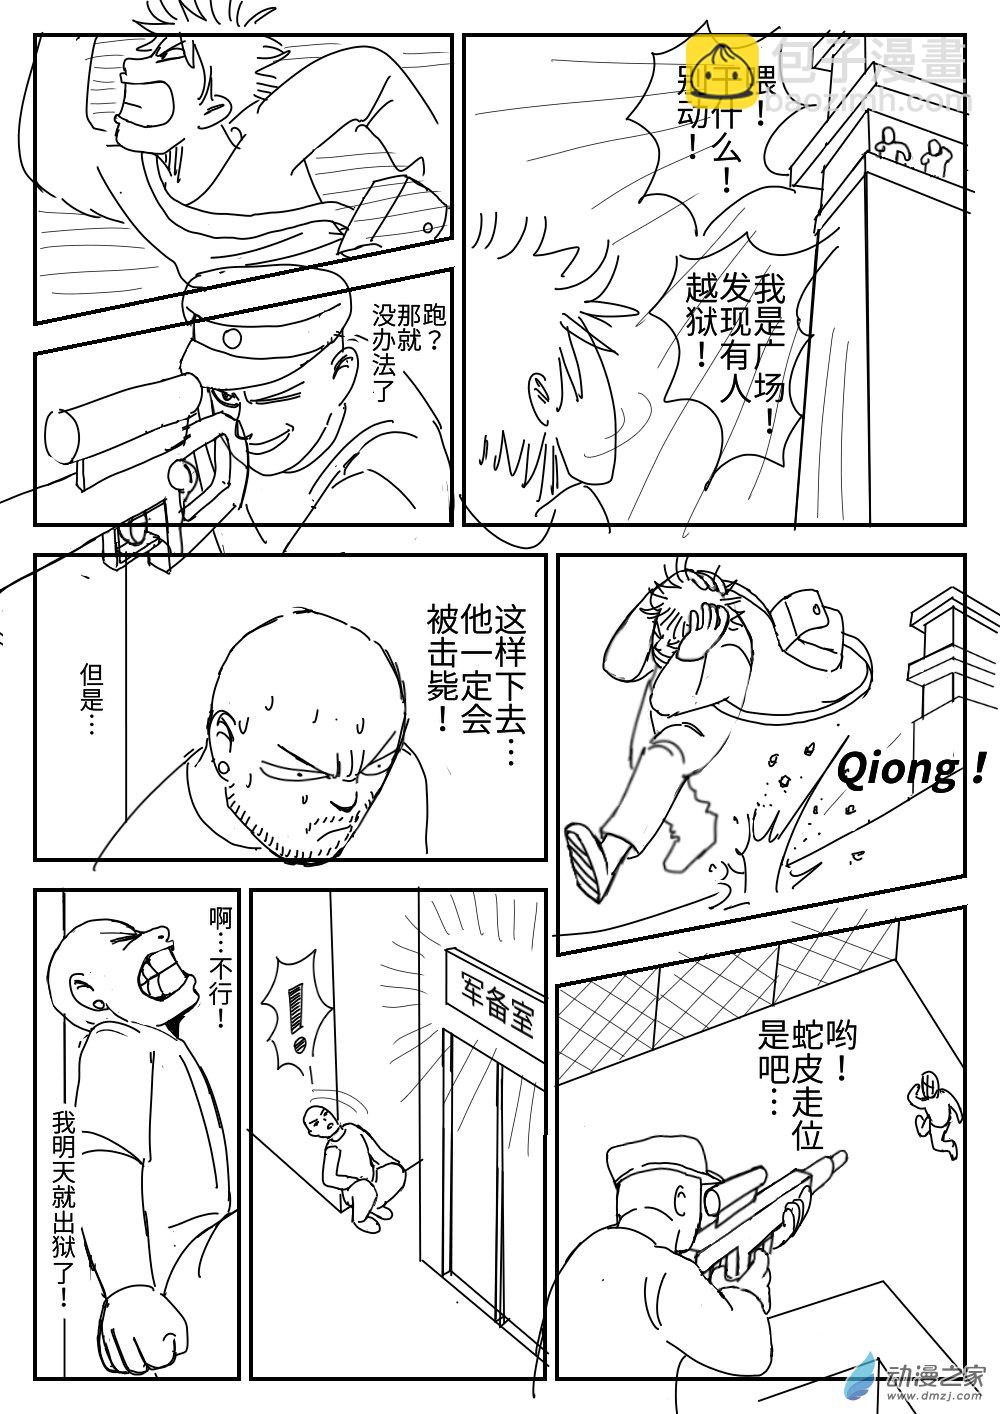 K神的短篇漫畫集 - 04 越獄 - 5